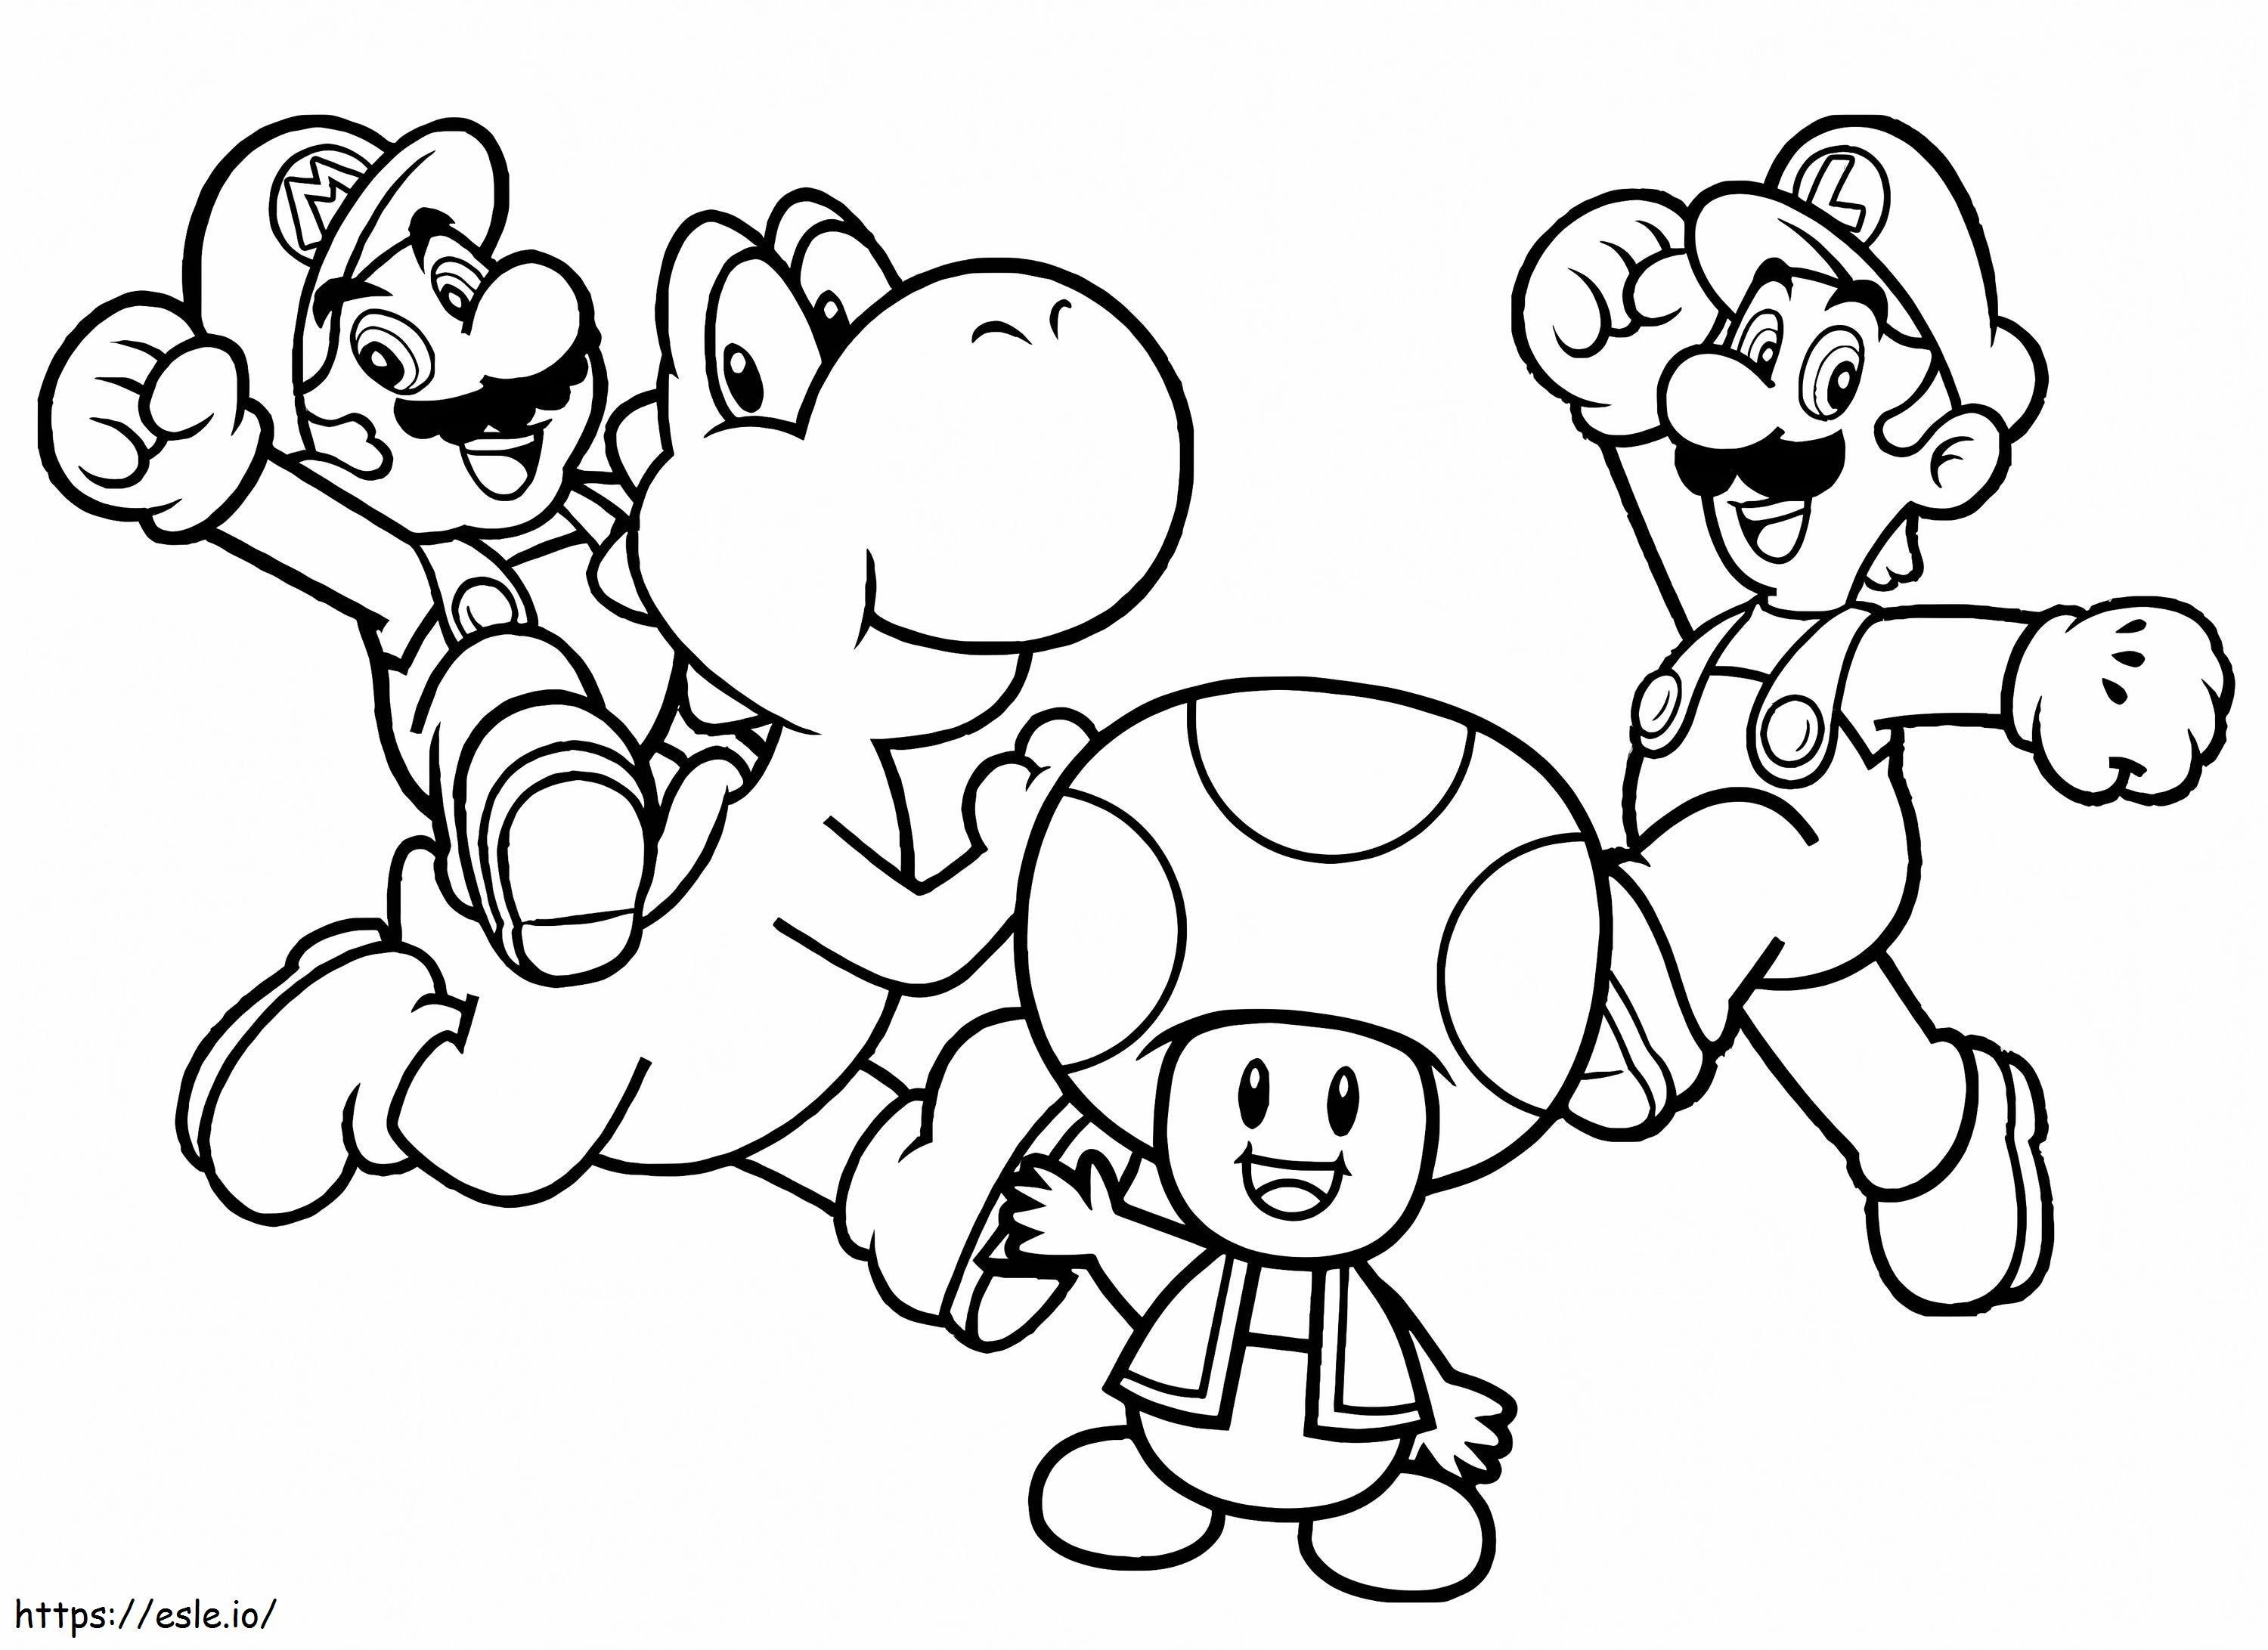 Mario'dan Karakterler boyama